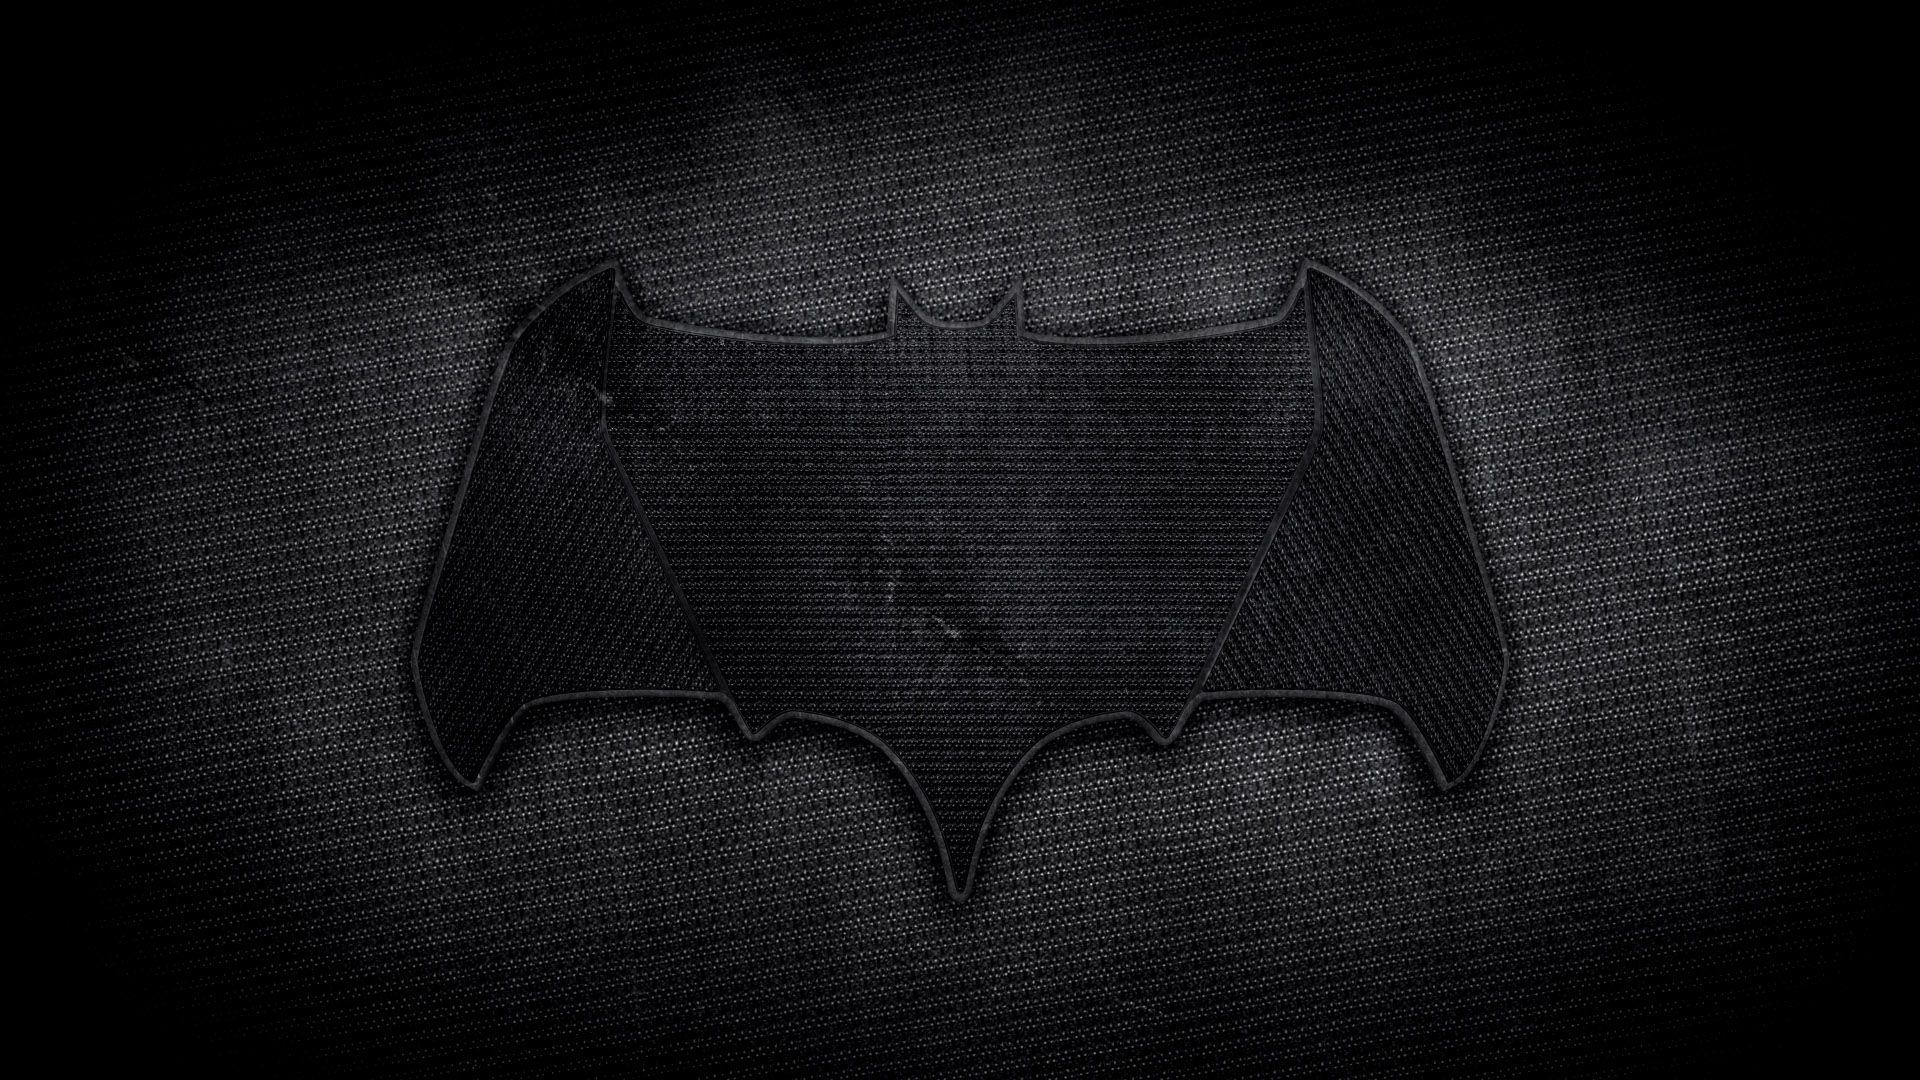 Batman Vs Superman Logo Wallpaper, Best & Inspirational High